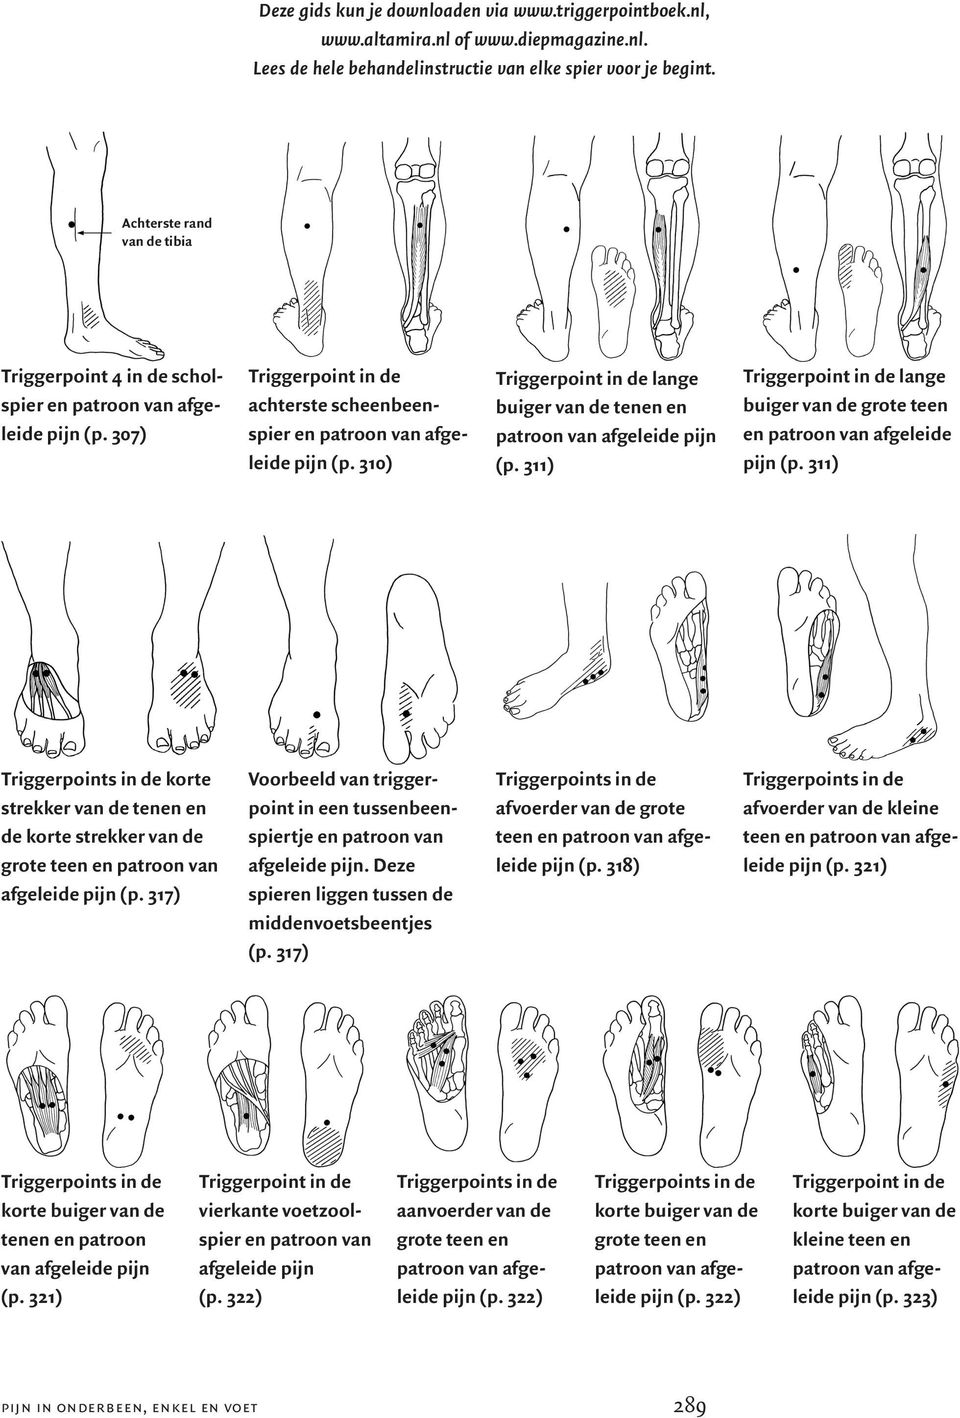 311) korte strekker van de tenen en de korte strekker van de grote teen en patroon van afgeleide pijn (p. 317) Voorbeeld van triggerpoint in een tussenbeenspiertje en patroon van afgeleide pijn.